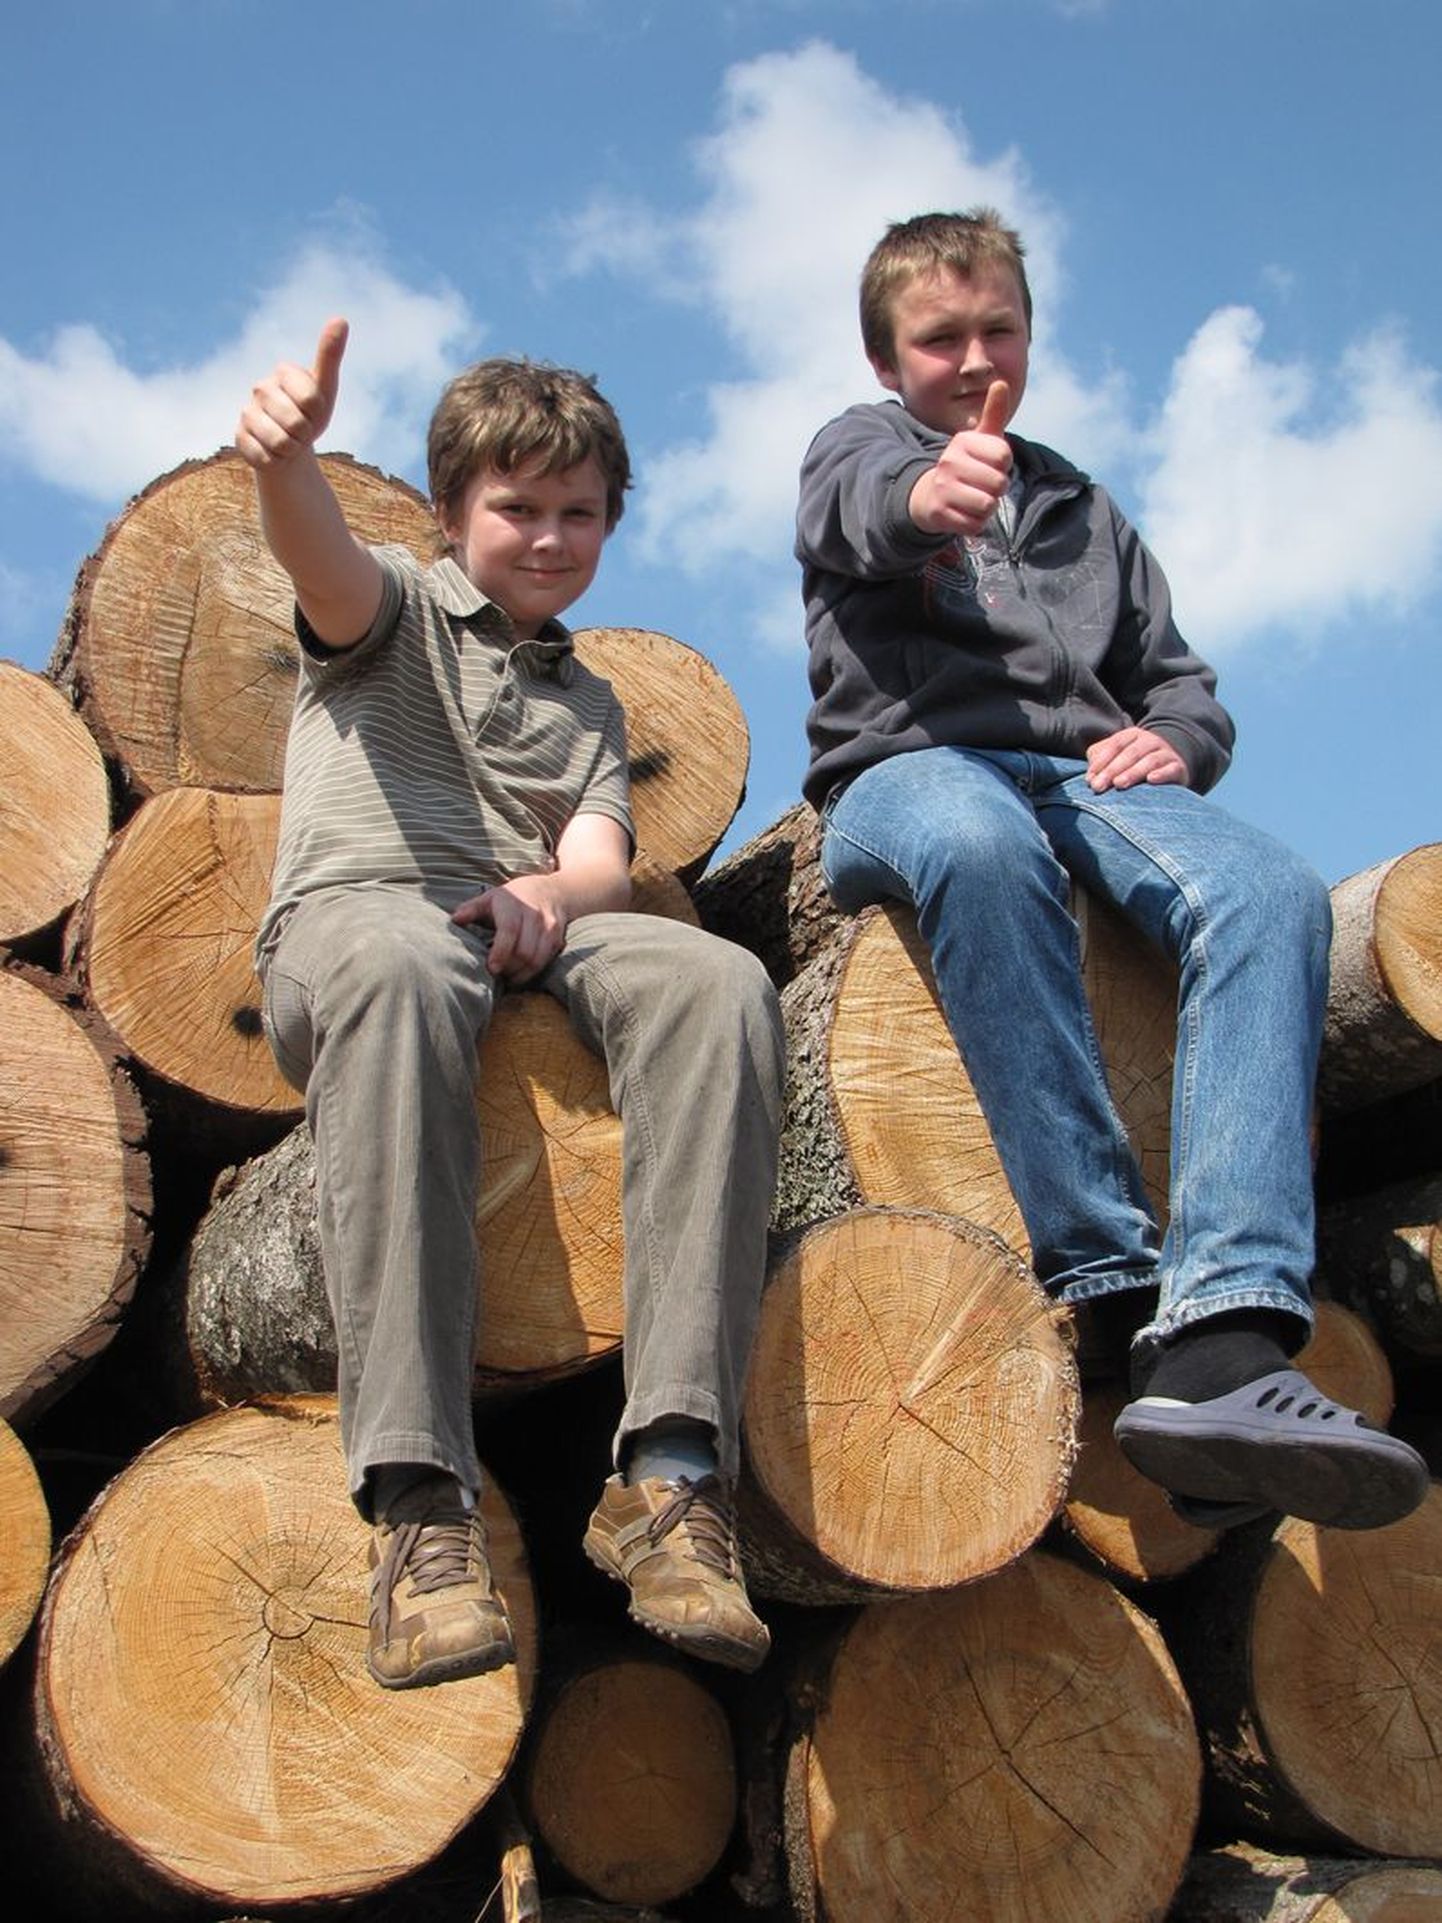 Peetri põhikooli õpilased Jaan-Markus Järva (vasakul) ja Peeter Ratassepp on rahul, et kogusid kumbki nii palju vanapaberit, millest jätkub, et päästa üht puud raiumisest.